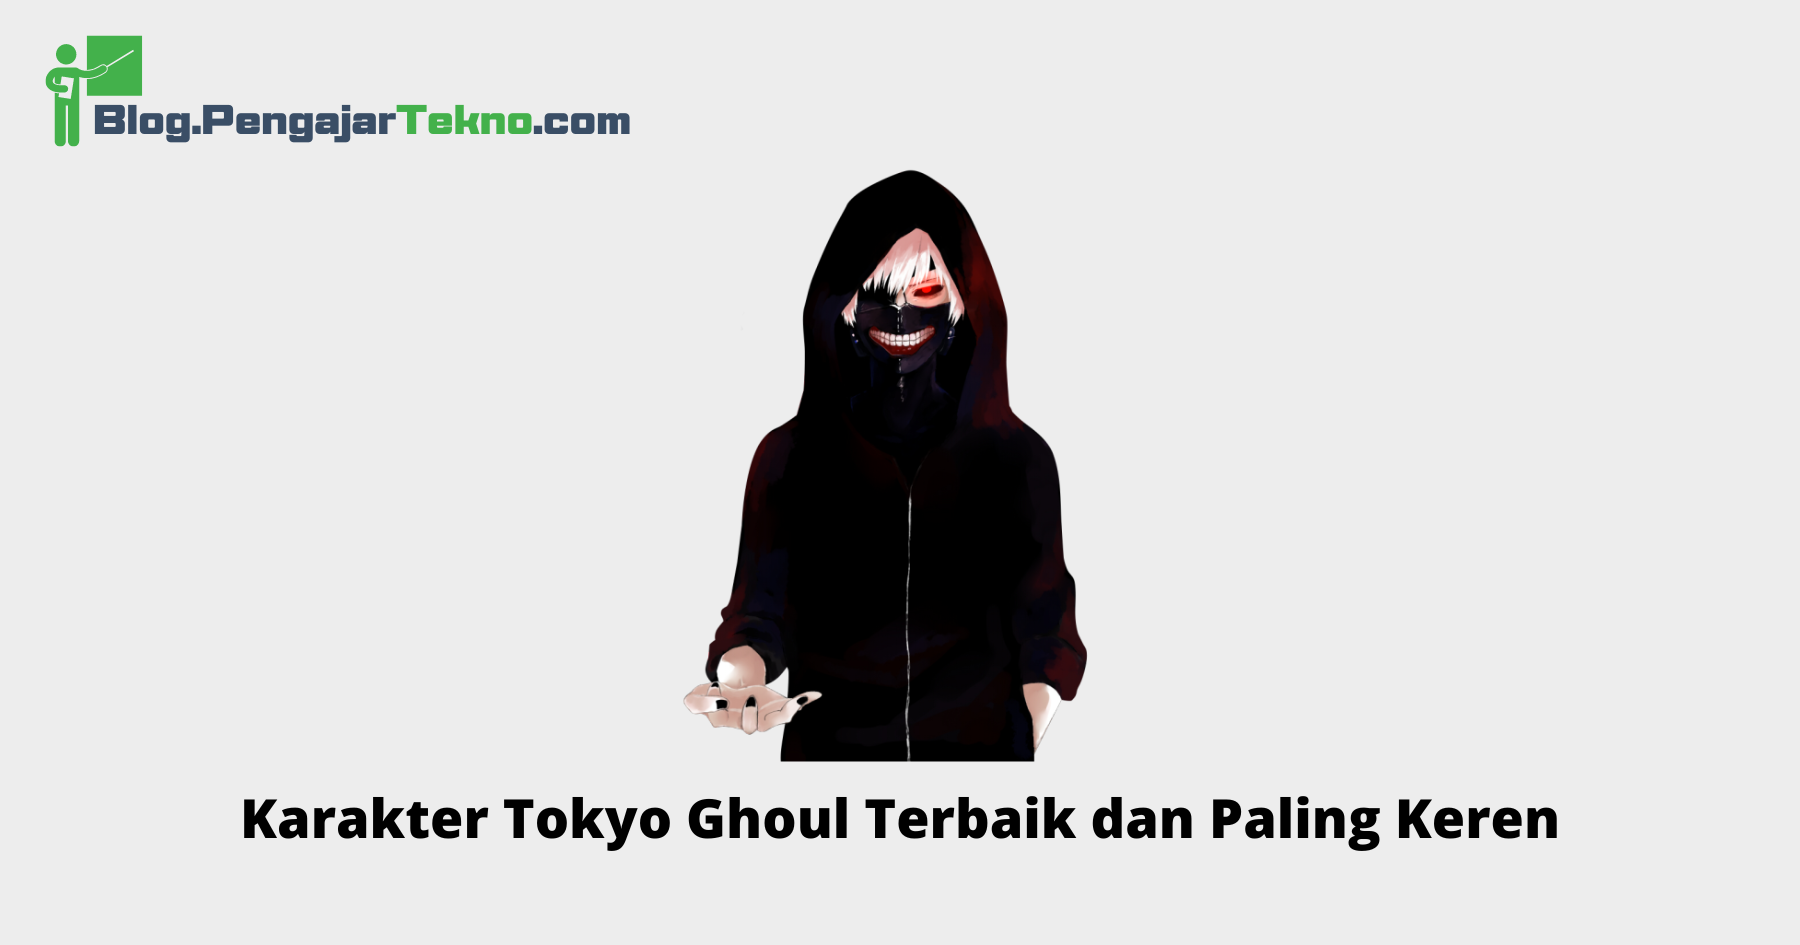 Karakter Tokyo Ghoul